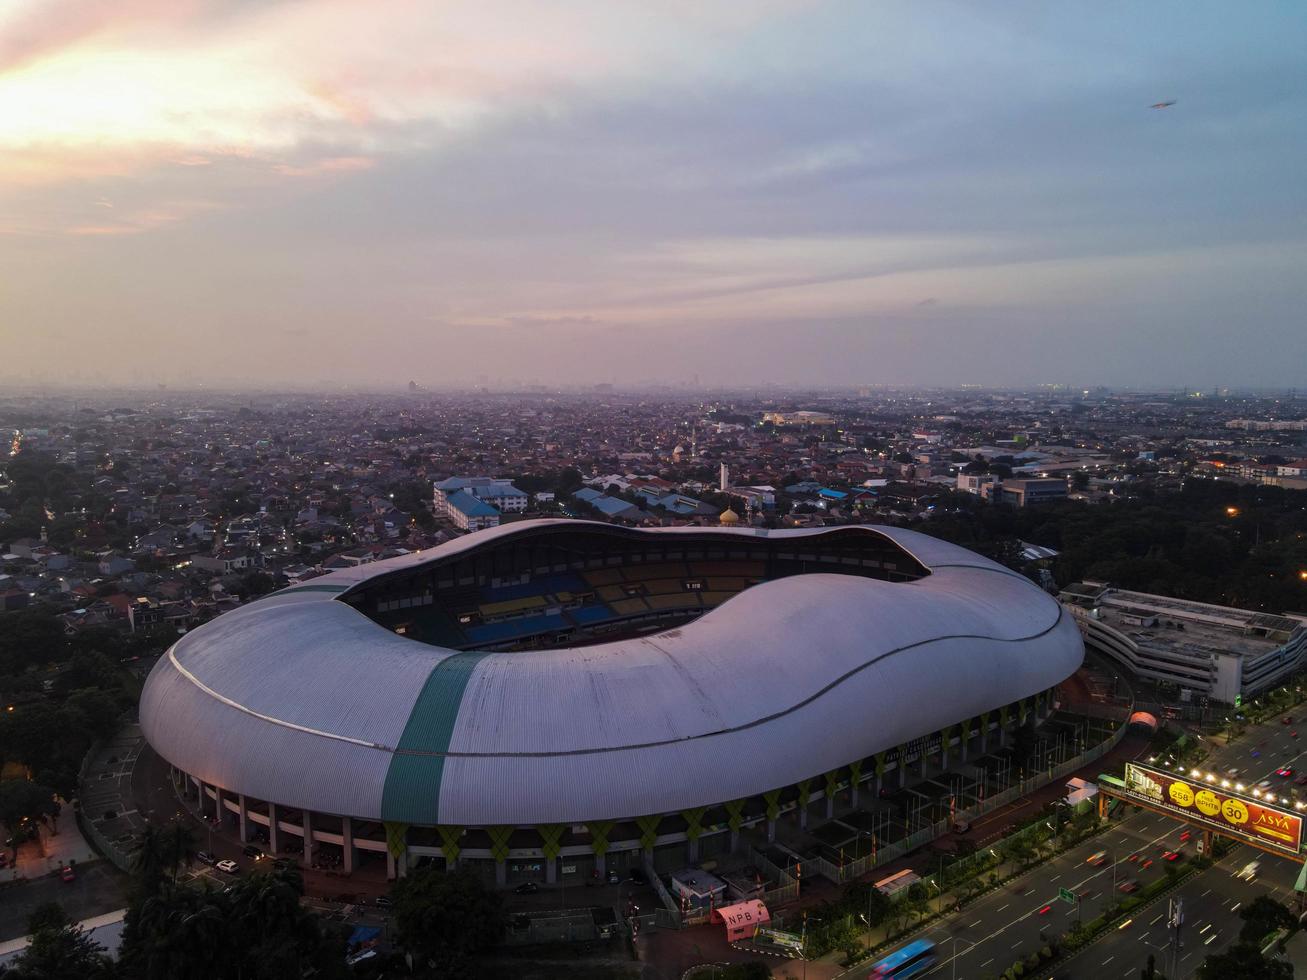 bekasi, indonesien 2021- Luftaufnahme des größten Stadions von bekasi von einer Drohne mit Sonnenuntergang und Wolken foto